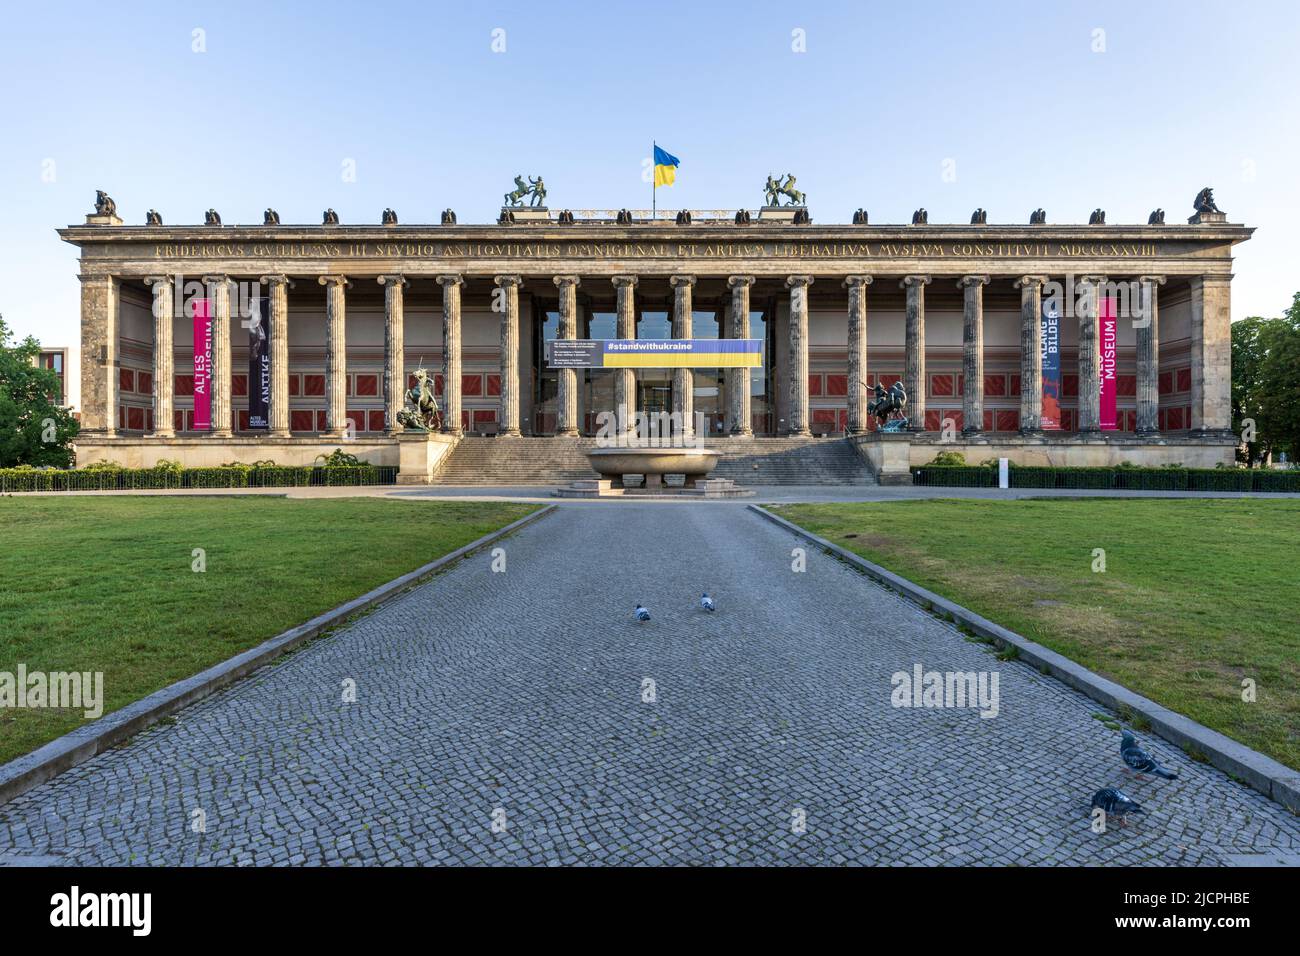 L'ancien musée (Altes Museum) a été construit de 1825 à 1830 par Karl Friedrich Schinkel dans le style du classicisme, Berlin, Allemagne. Banque D'Images